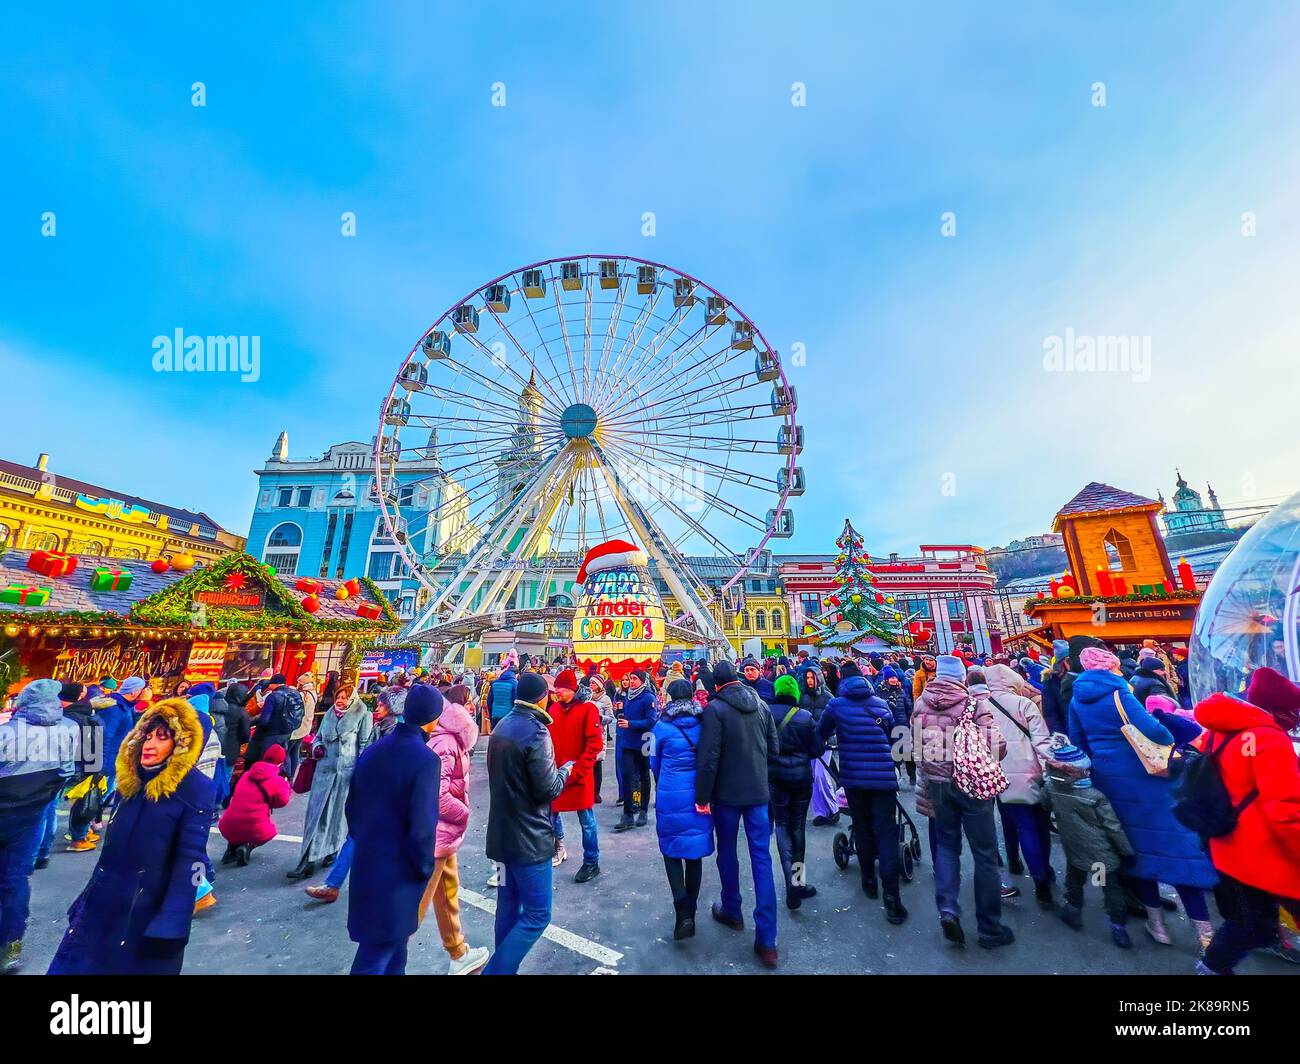 KIEV, UCRAINA - 2 GENNAIO 2022: Mercato di Natale affollato e occupato sulla piazza dei contratti con l'albero di Natale, ruota ferris e bancarelle del mercato, su Foto Stock